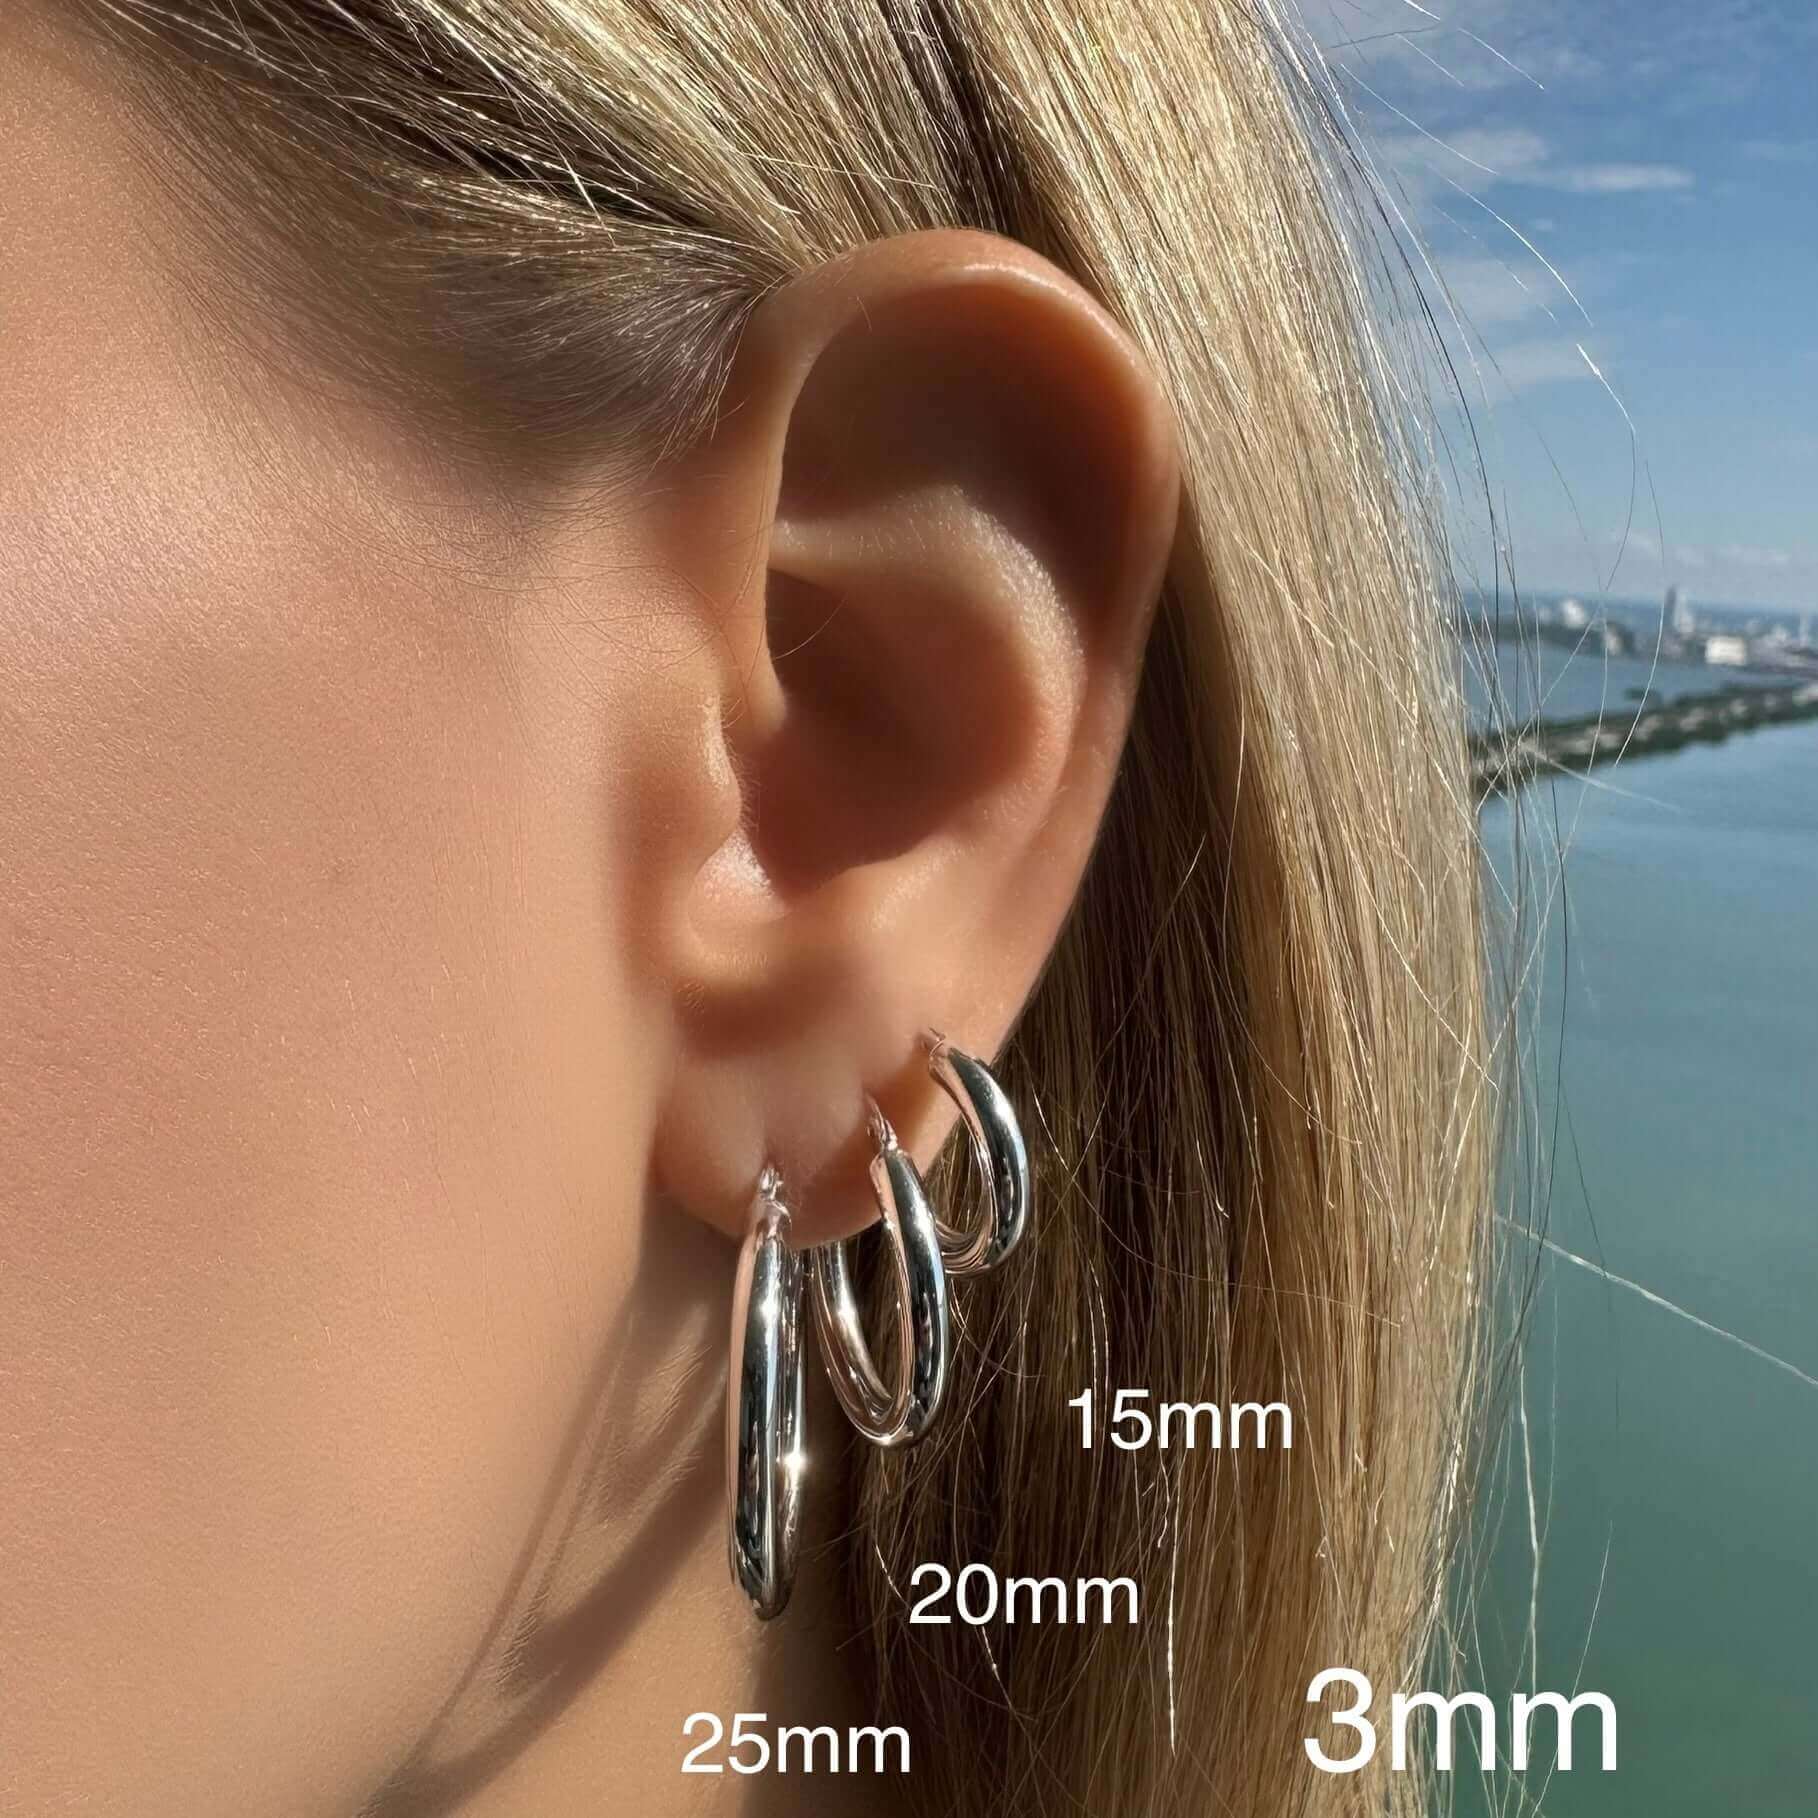 14K Gold Tube Hoop Earrings